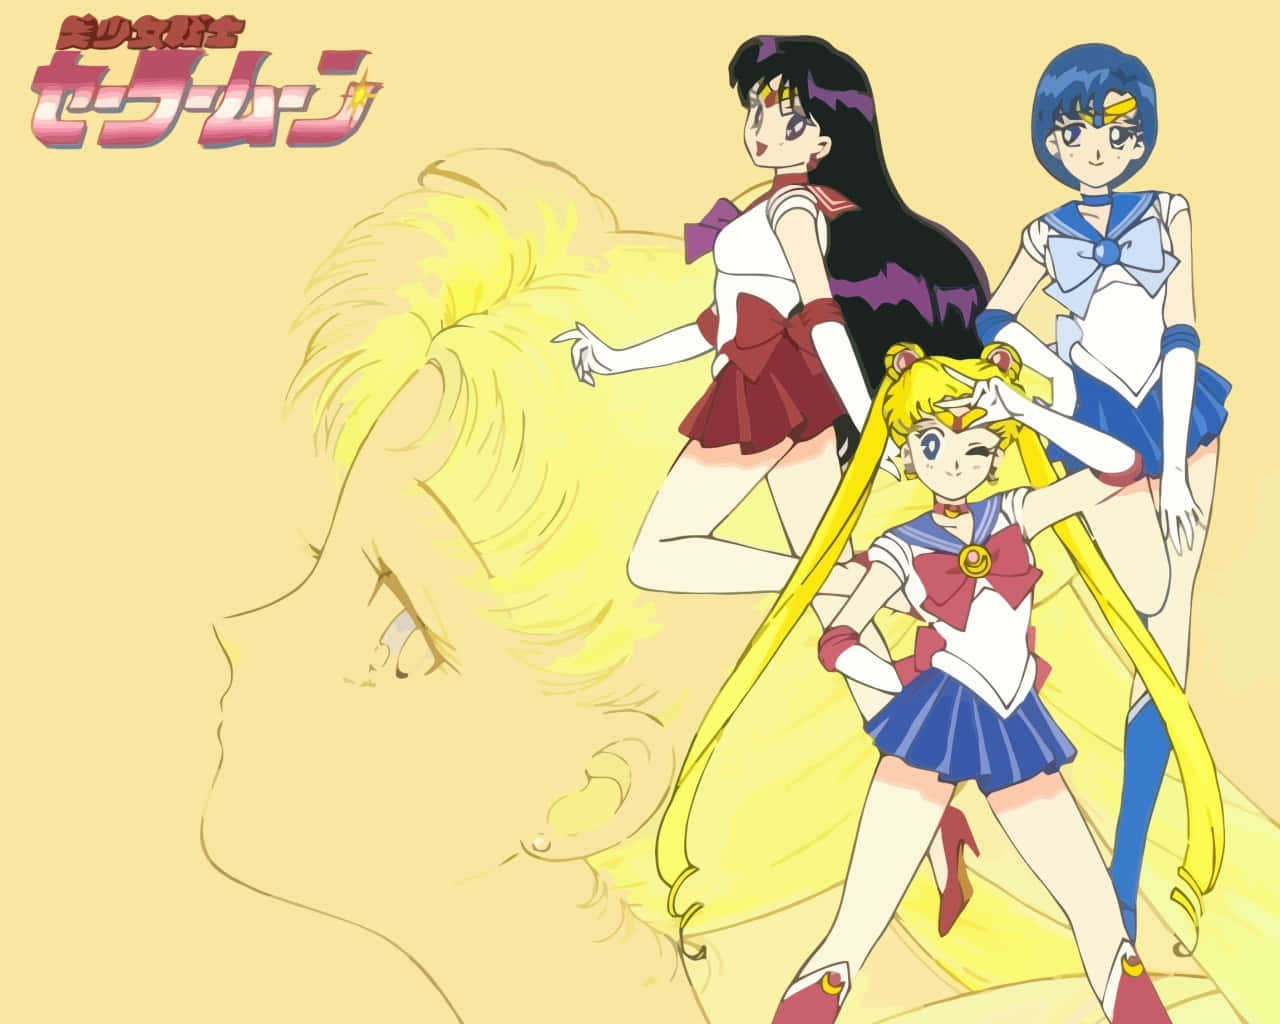 Klassischeranime-krieger, Sailor Moon